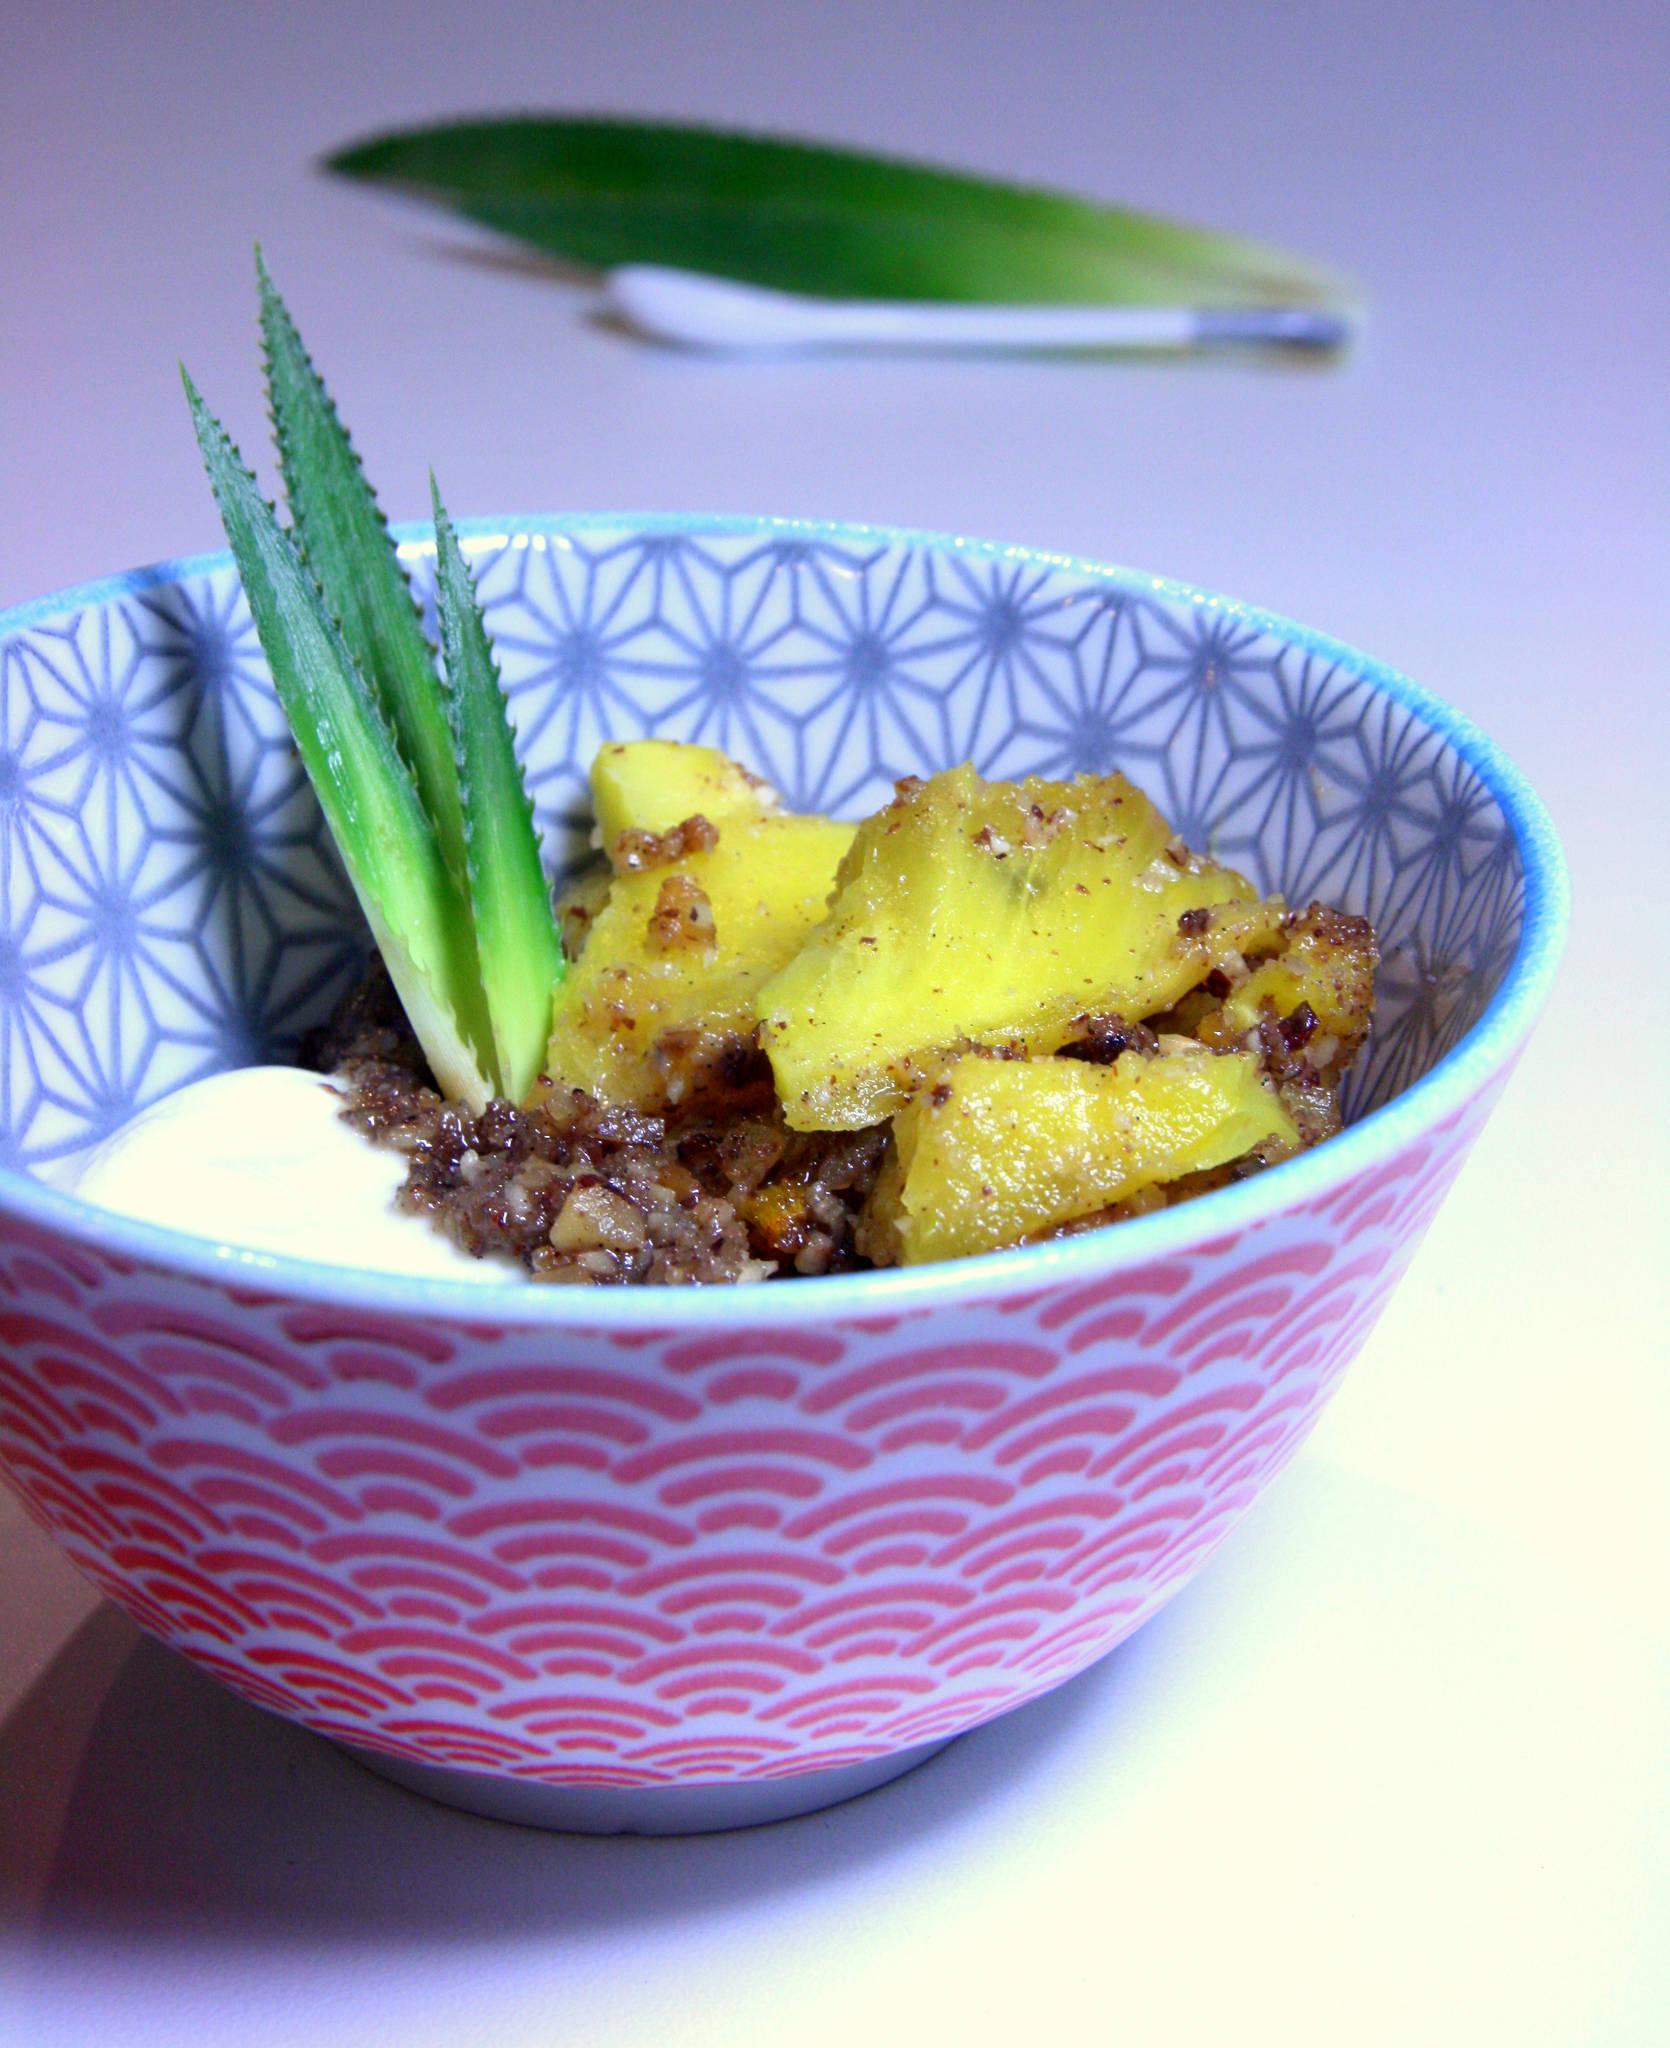 Ananas rôti aux noisettes, miel et vanille